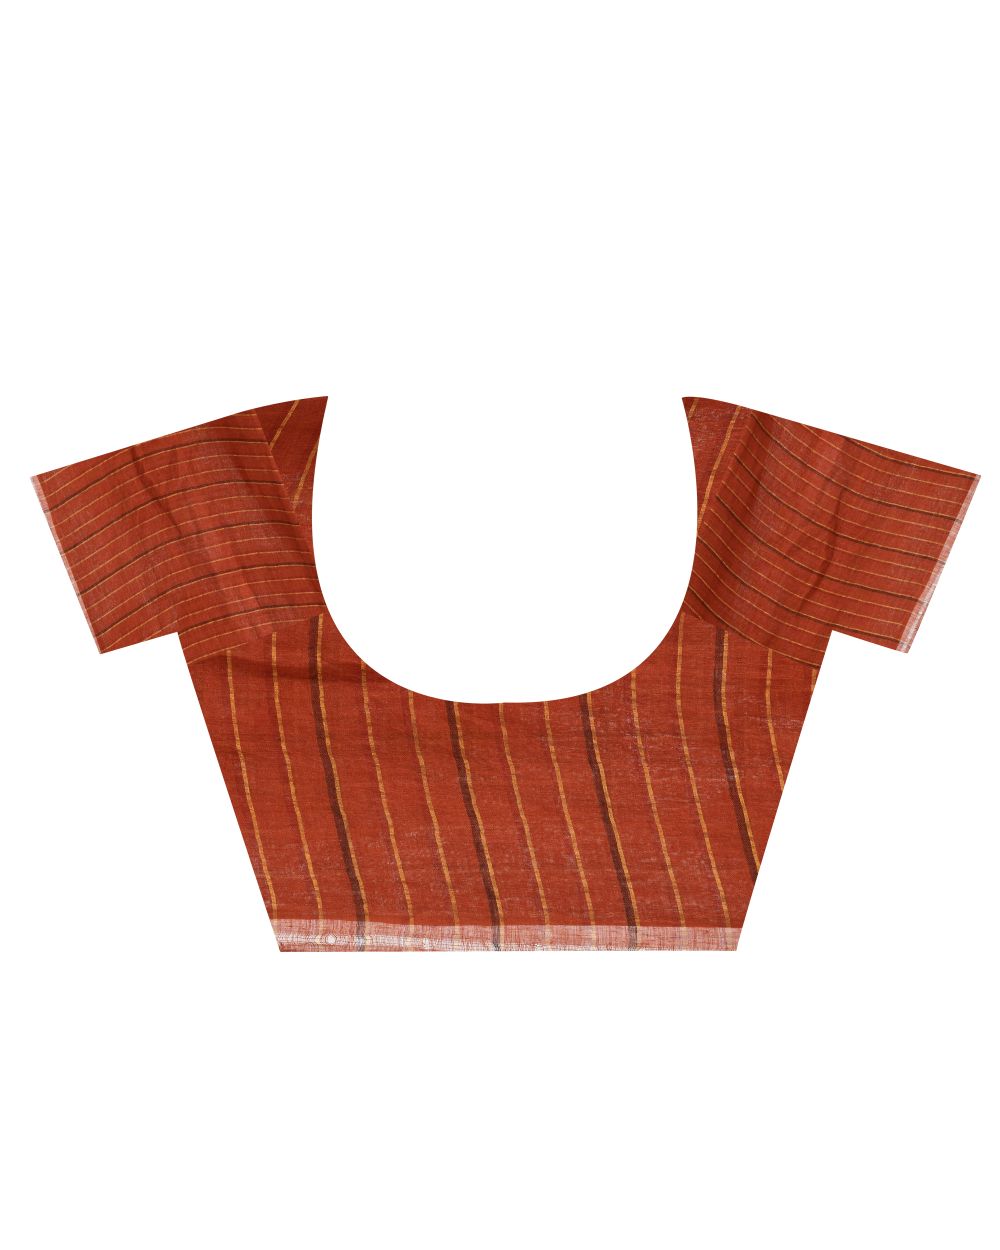 Orange handwoven linen bengal saree